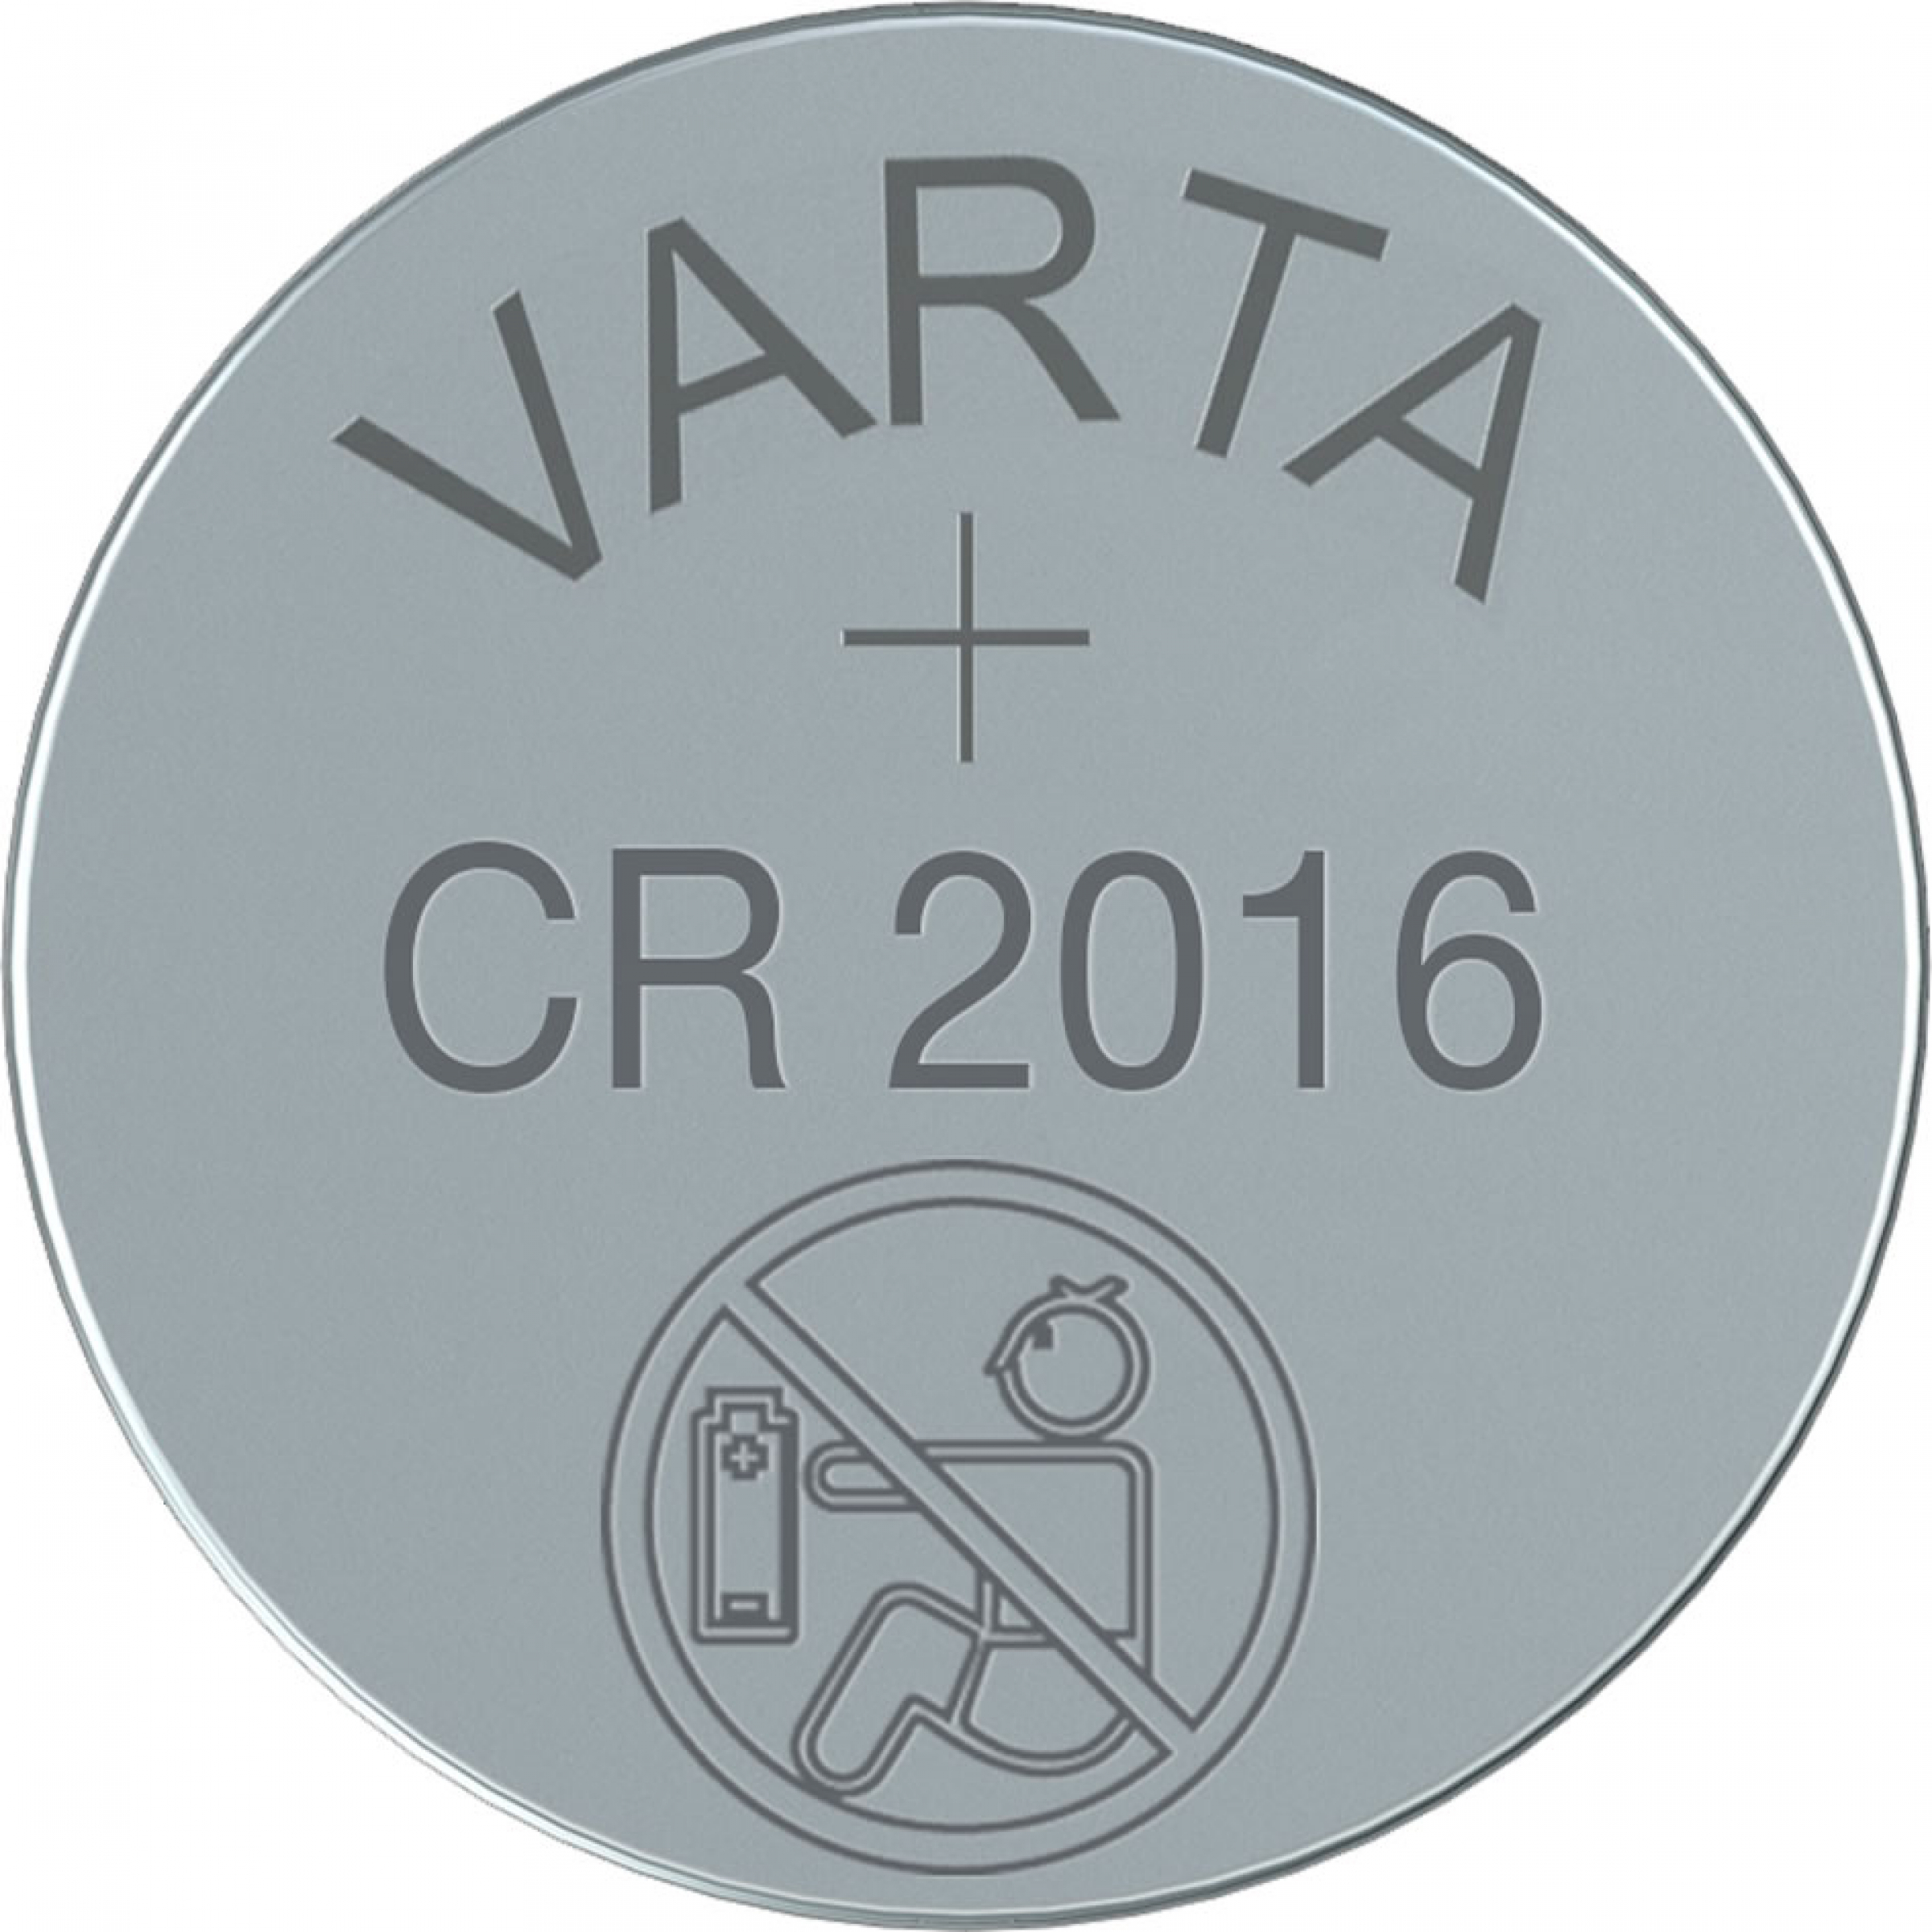 Varta Lithium Knopfzelle CR 2016 3V - Blister 5